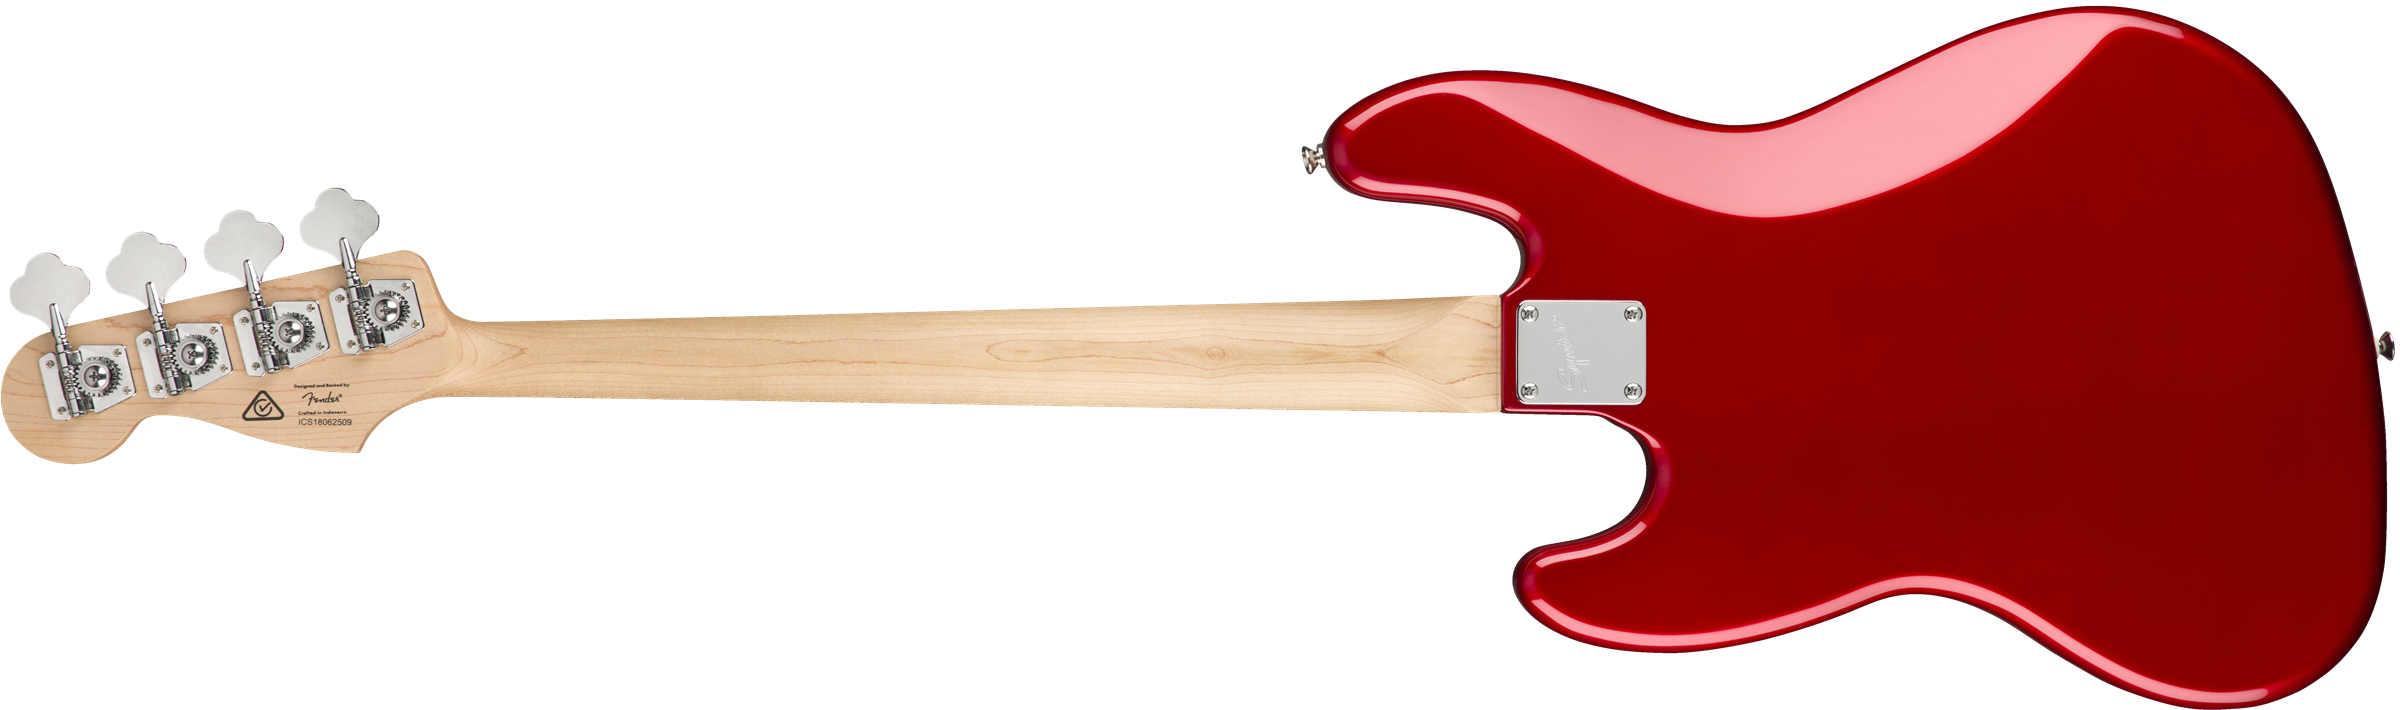 Squier Contemporary Jazz Bass Lau - Metallic Red - Solid body elektrische bas - Variation 1